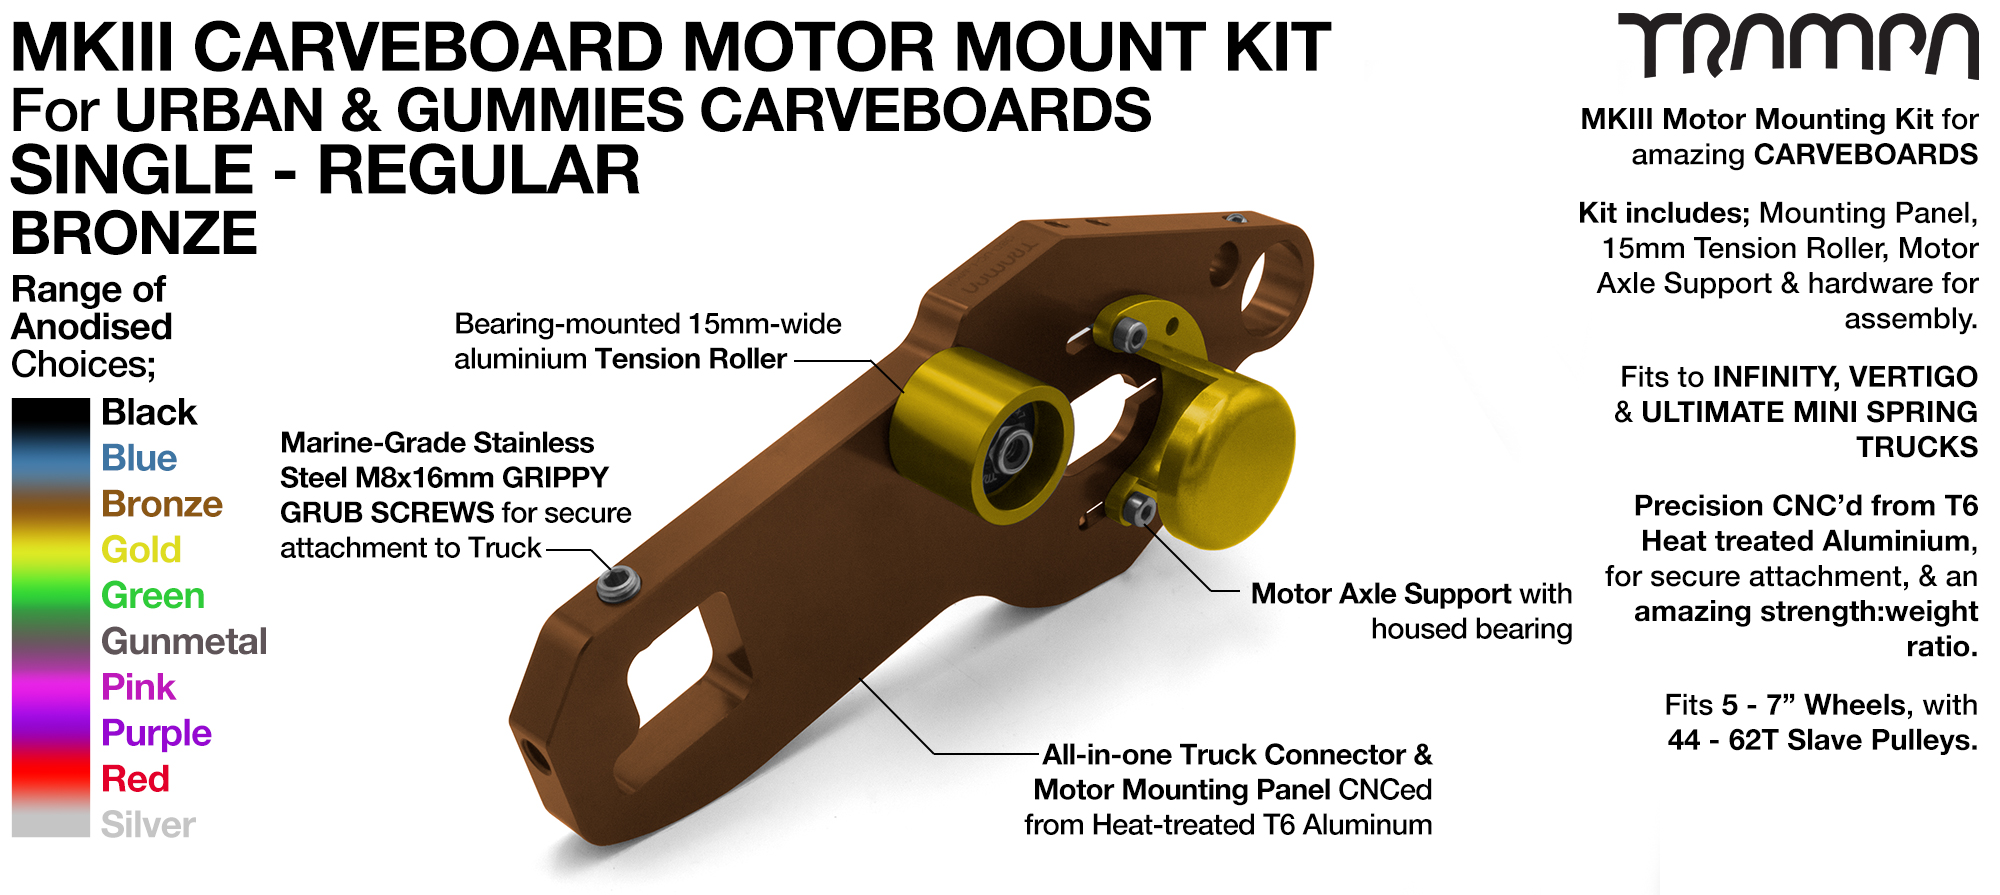 Mk III CARVE BOARD Motor Mount Kit - SINGLE BRONZE